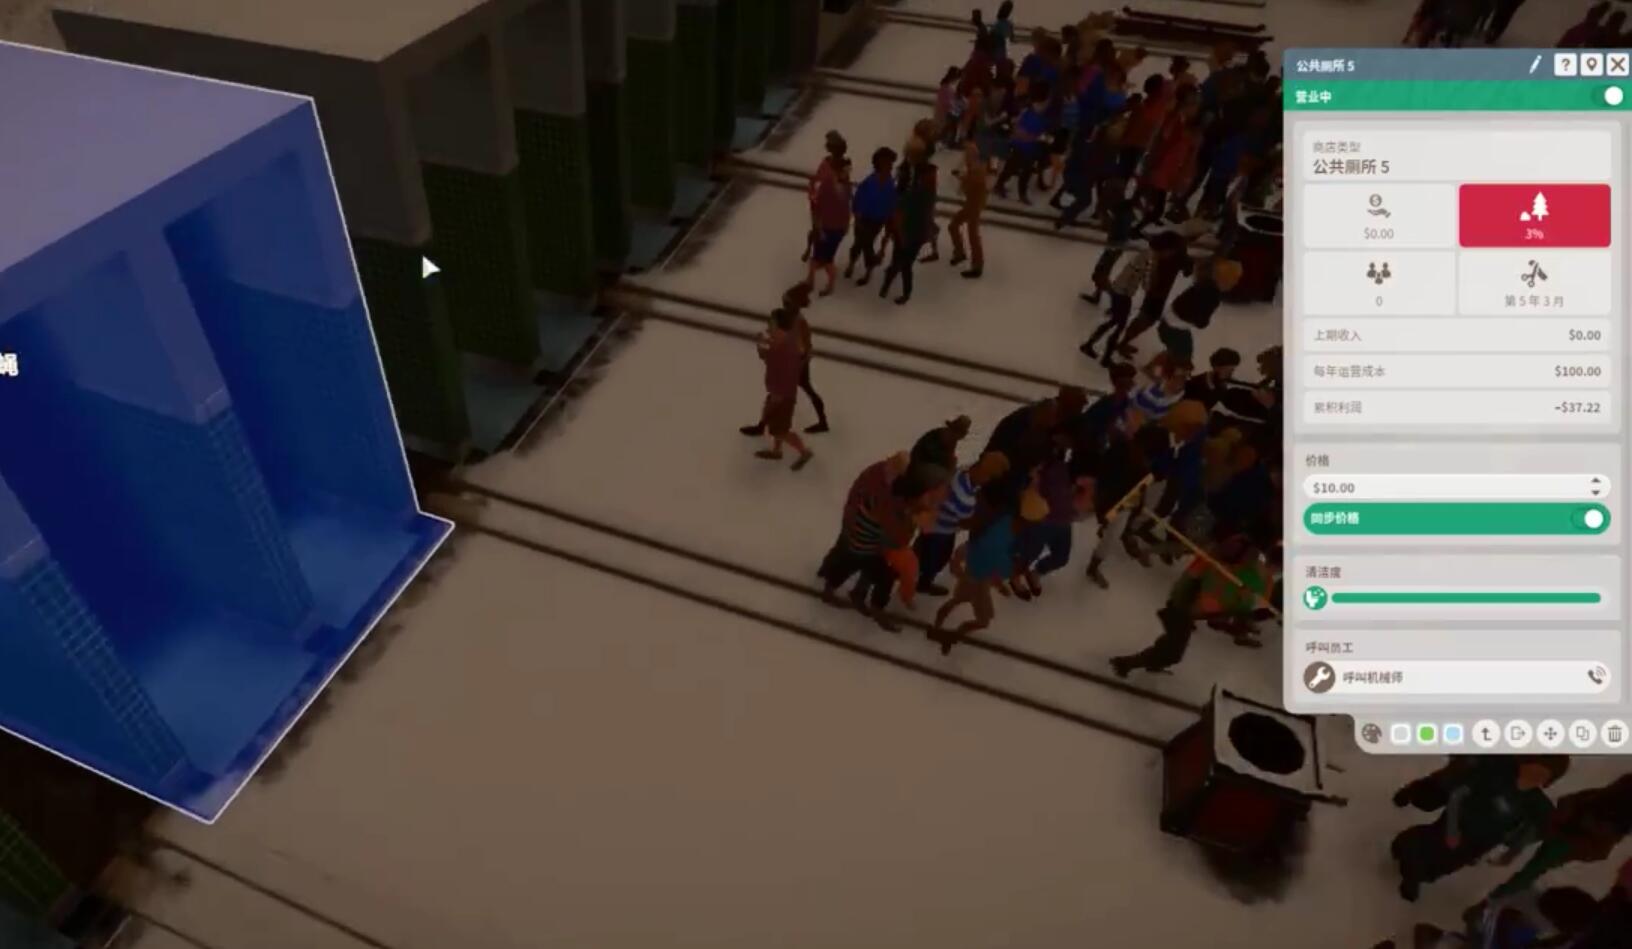 《動物園之星》新DLC發布 鬼才主播開門營業花式翻車